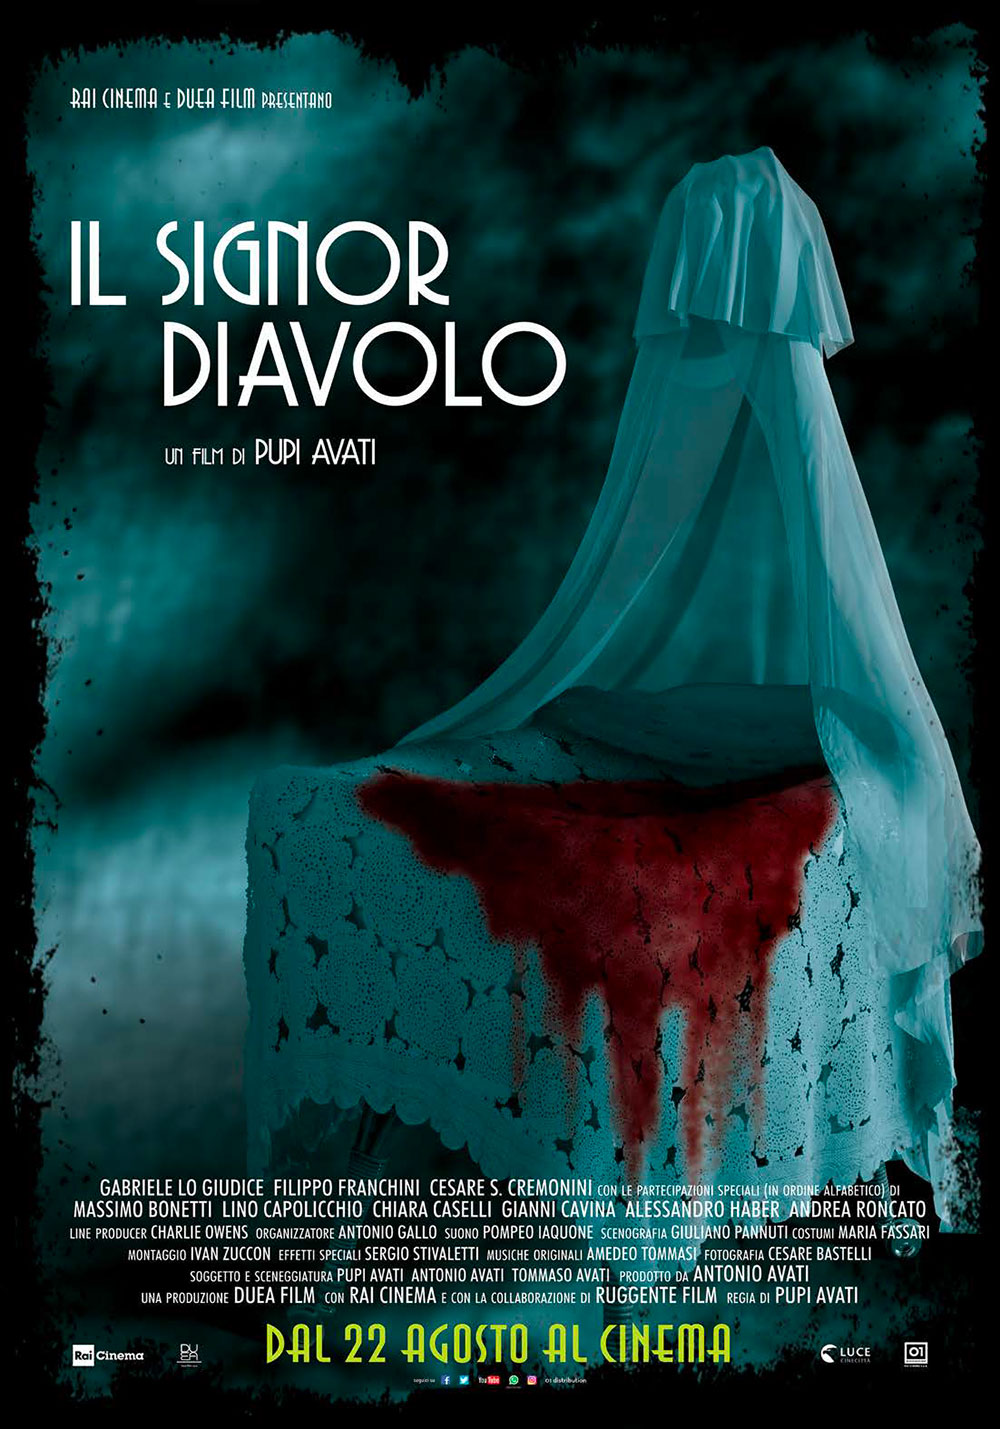  Dall'articolo: Il Signor Diavolo, il poster ufficiale del film.